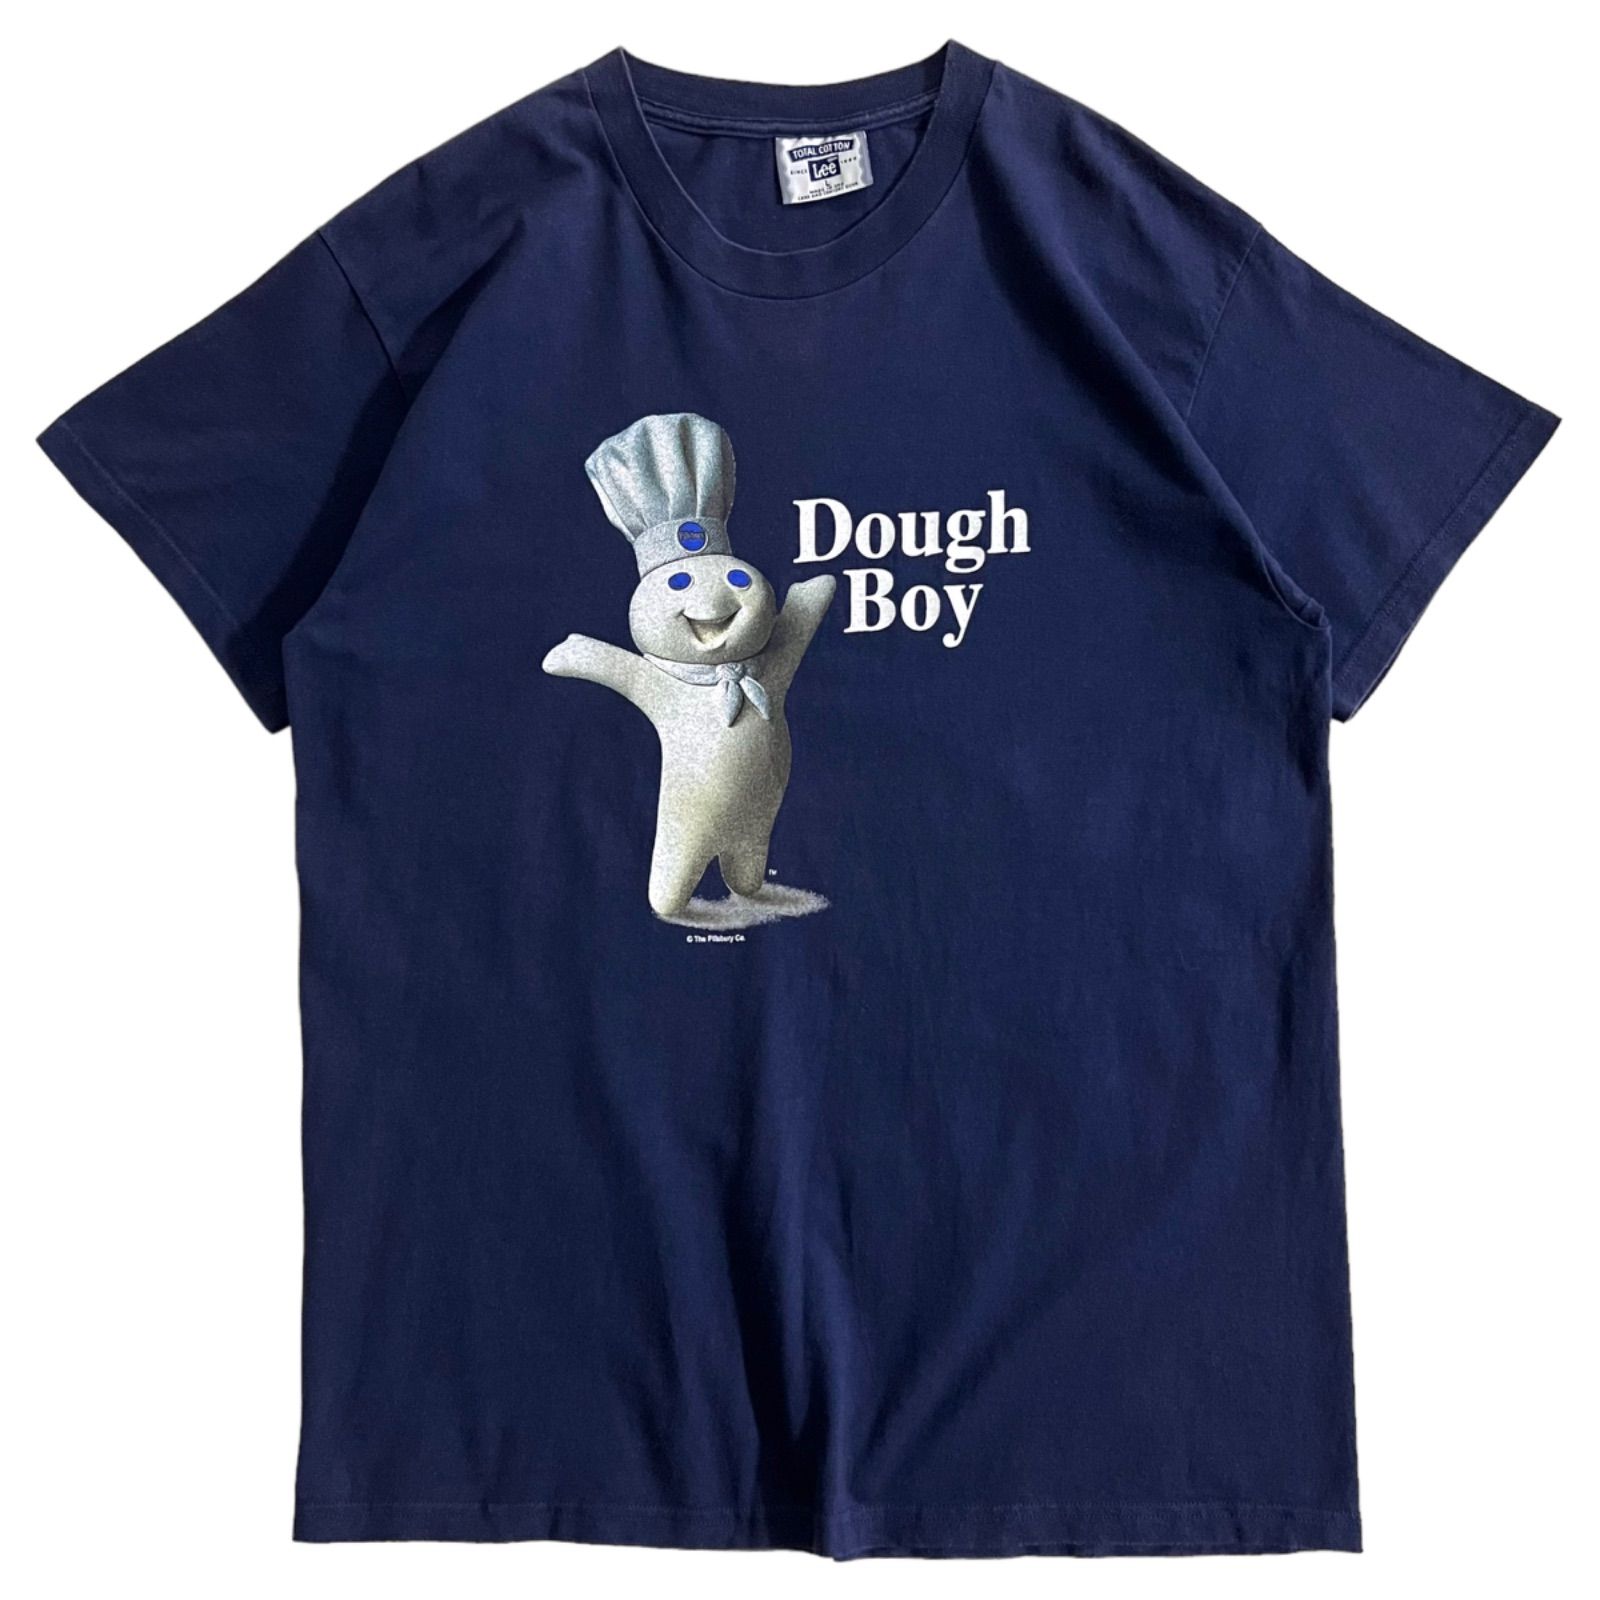 90s USA製 企業 Pillsbury社 Dough Boy キャラクター プリント Tシャツ 